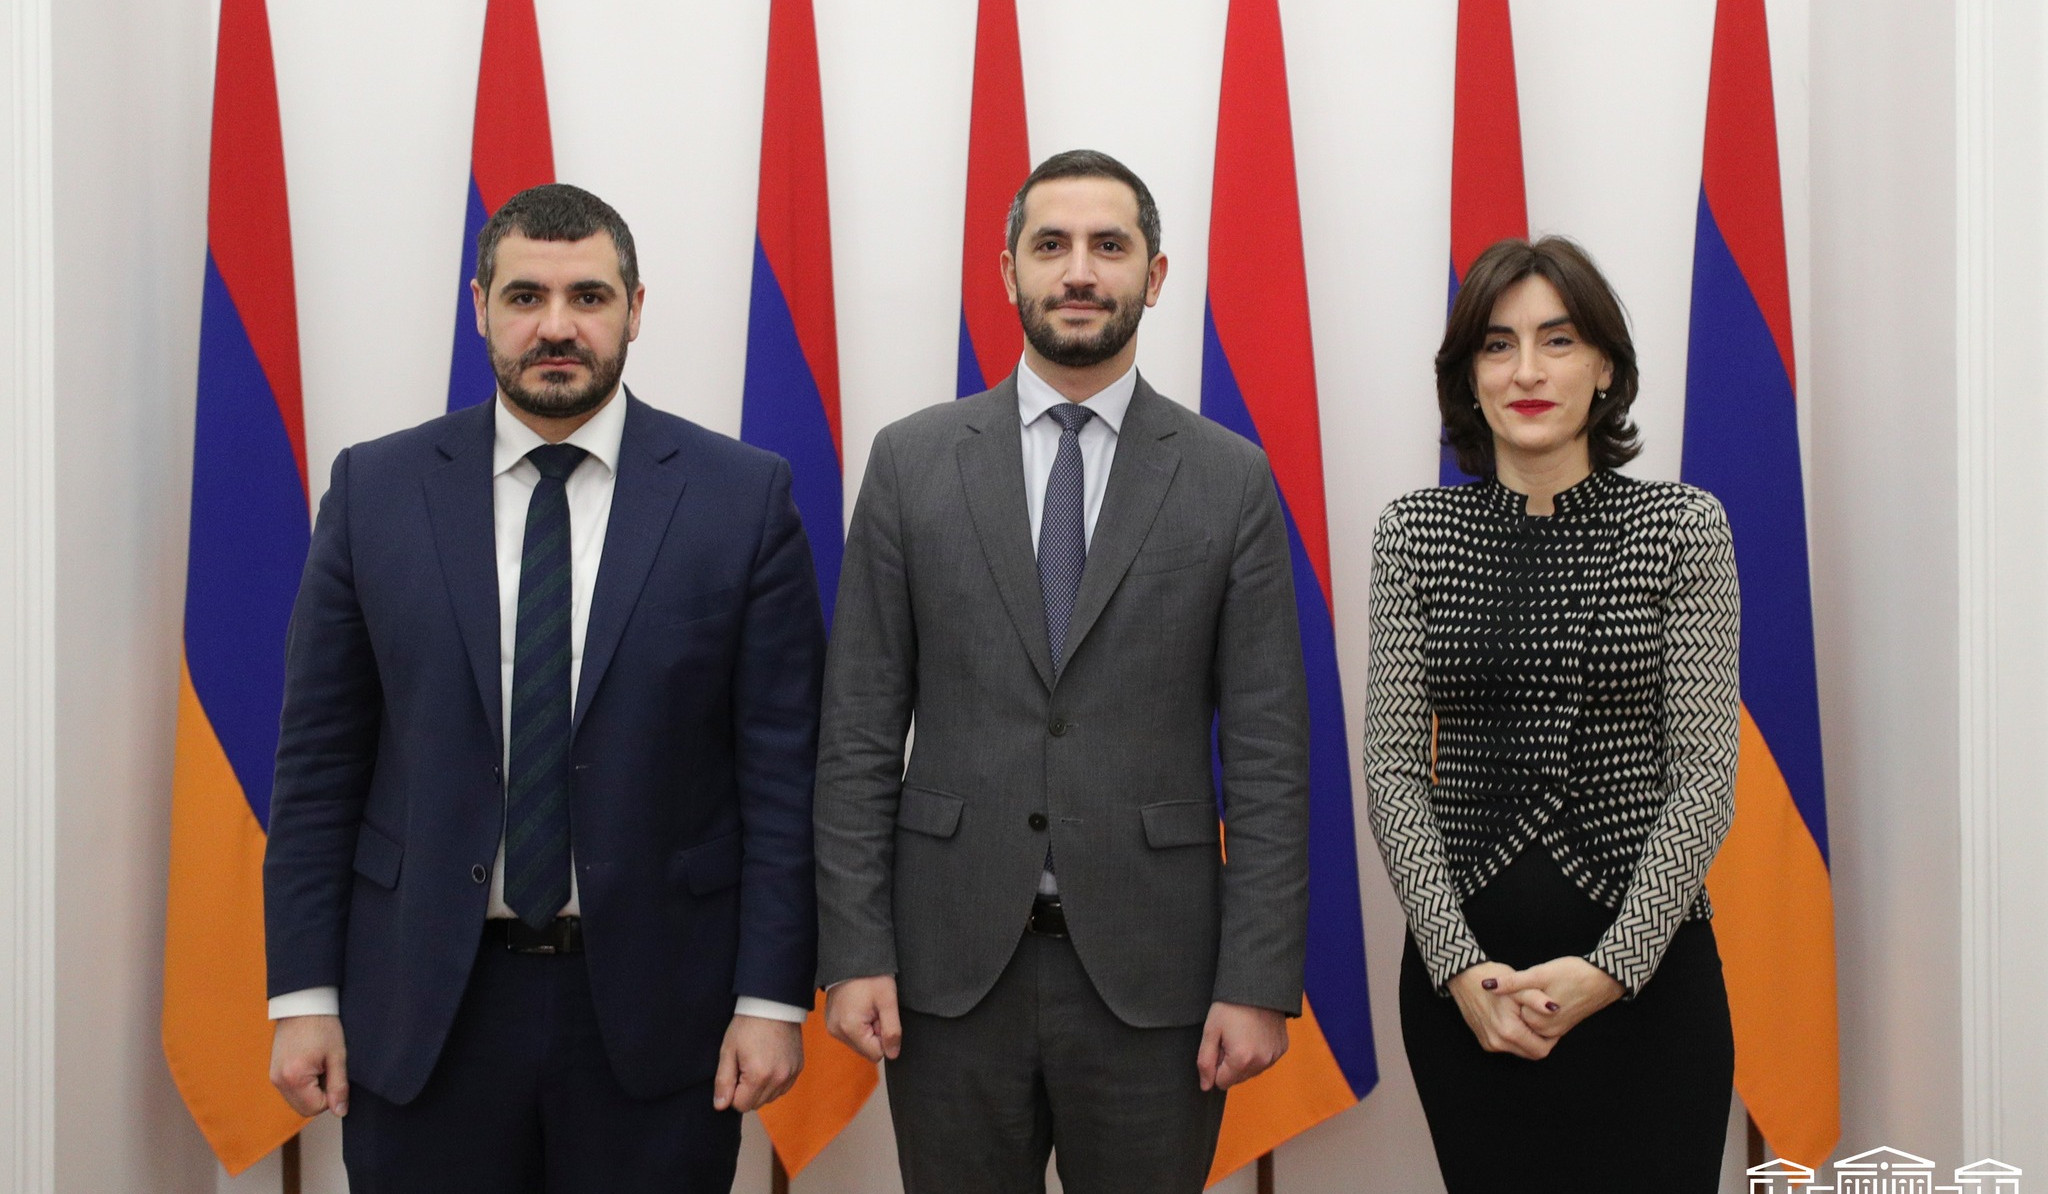 Армения эффективно организовала работу осенней сессии ПА ОБСЕ: Бочоришвили